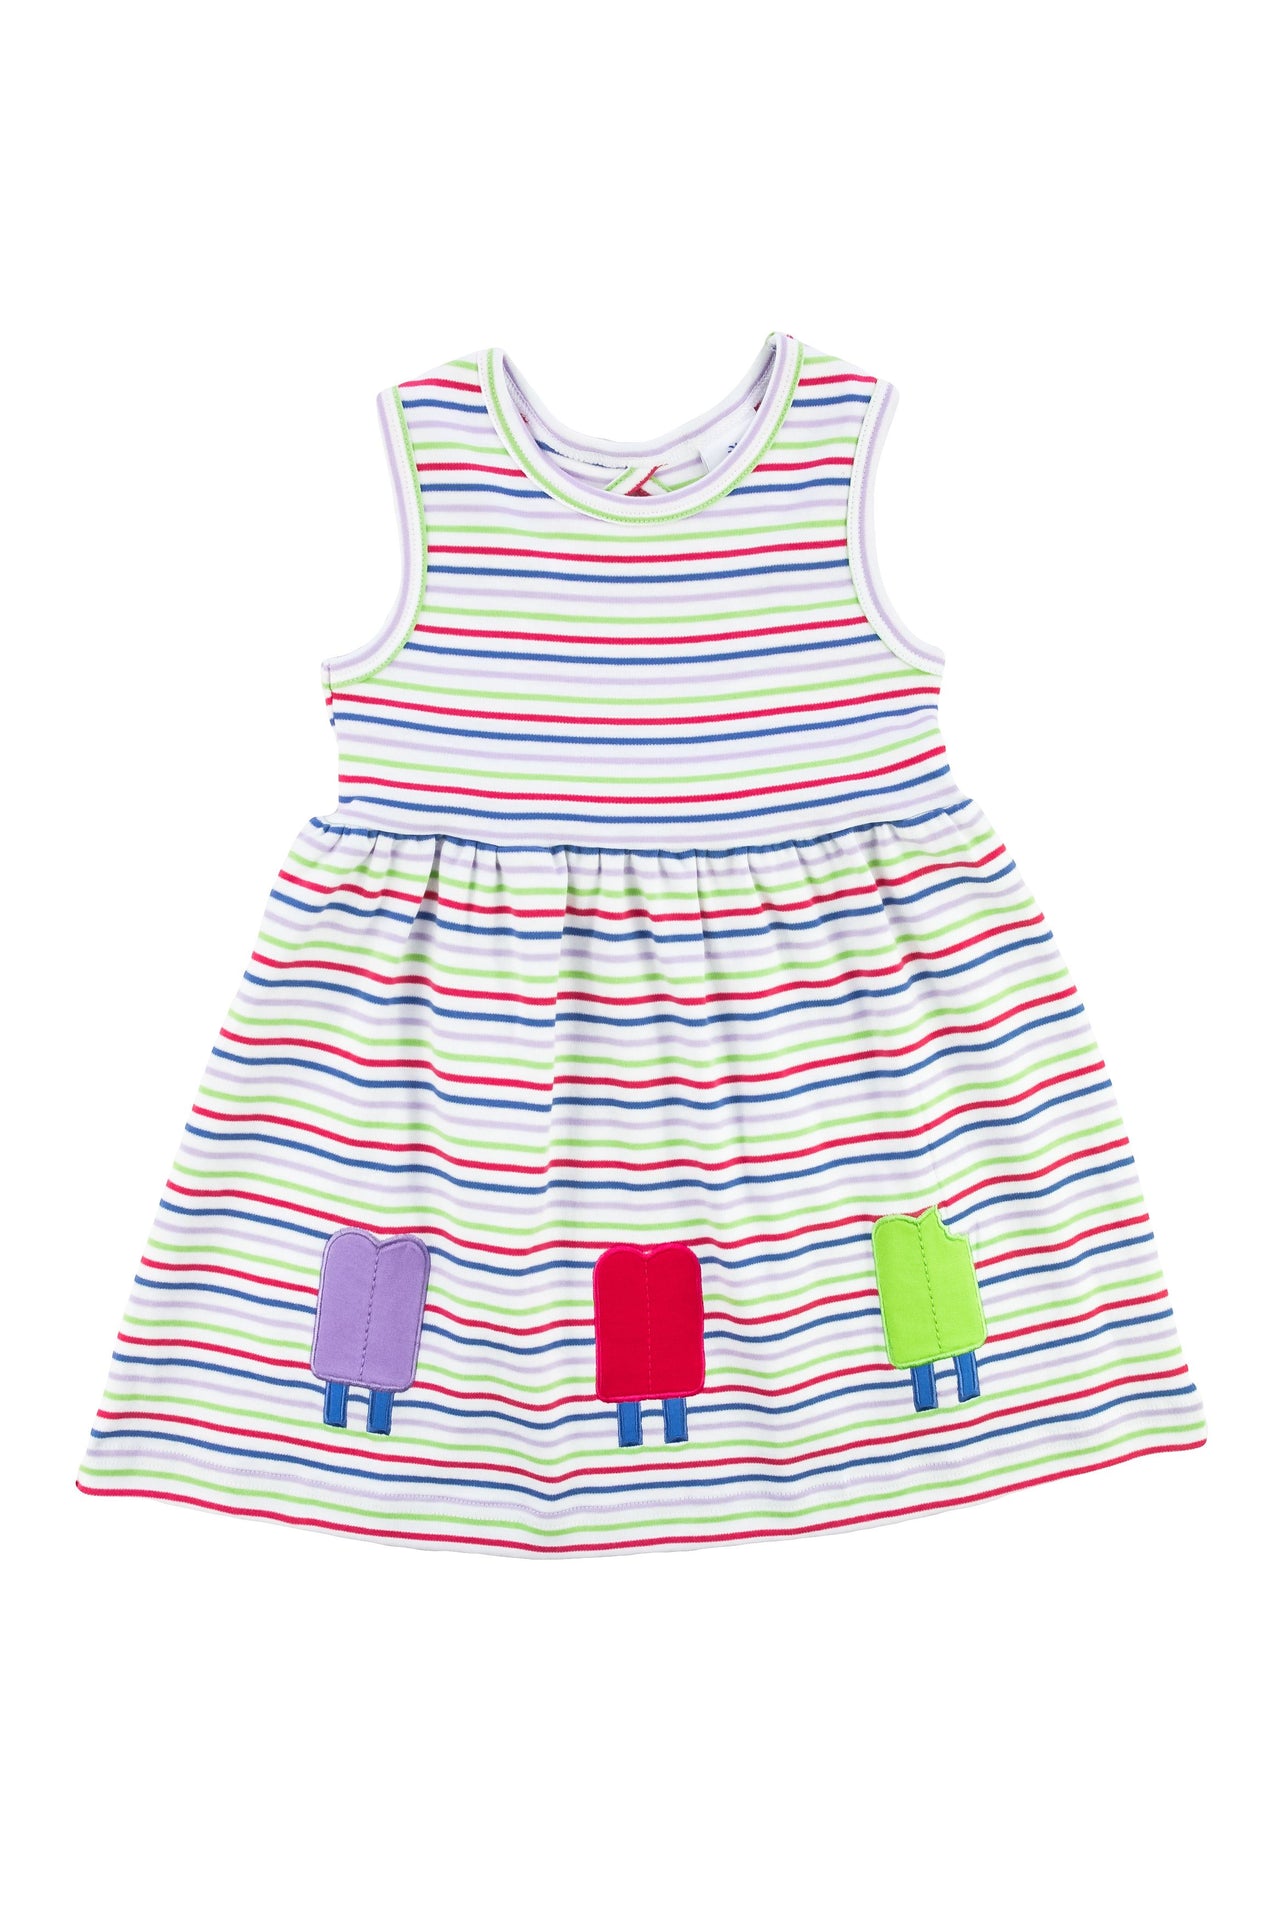 Florence Eiseman Stripe Knit Dress W/Popsicles C5216 5011